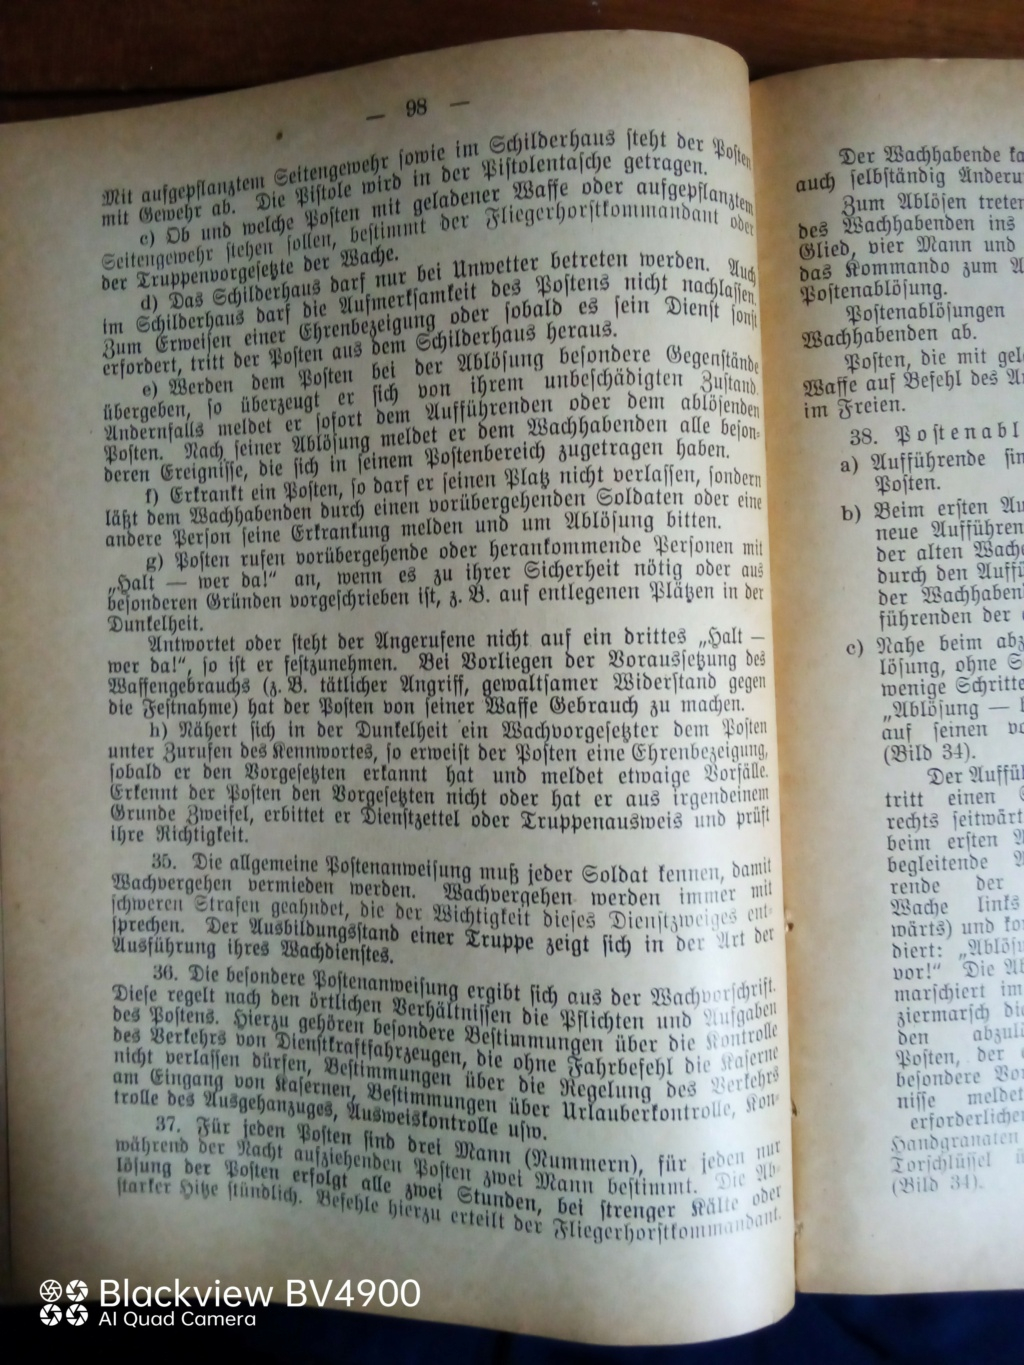 Handbucher der Luftwaffe - Page 2 Img_2168